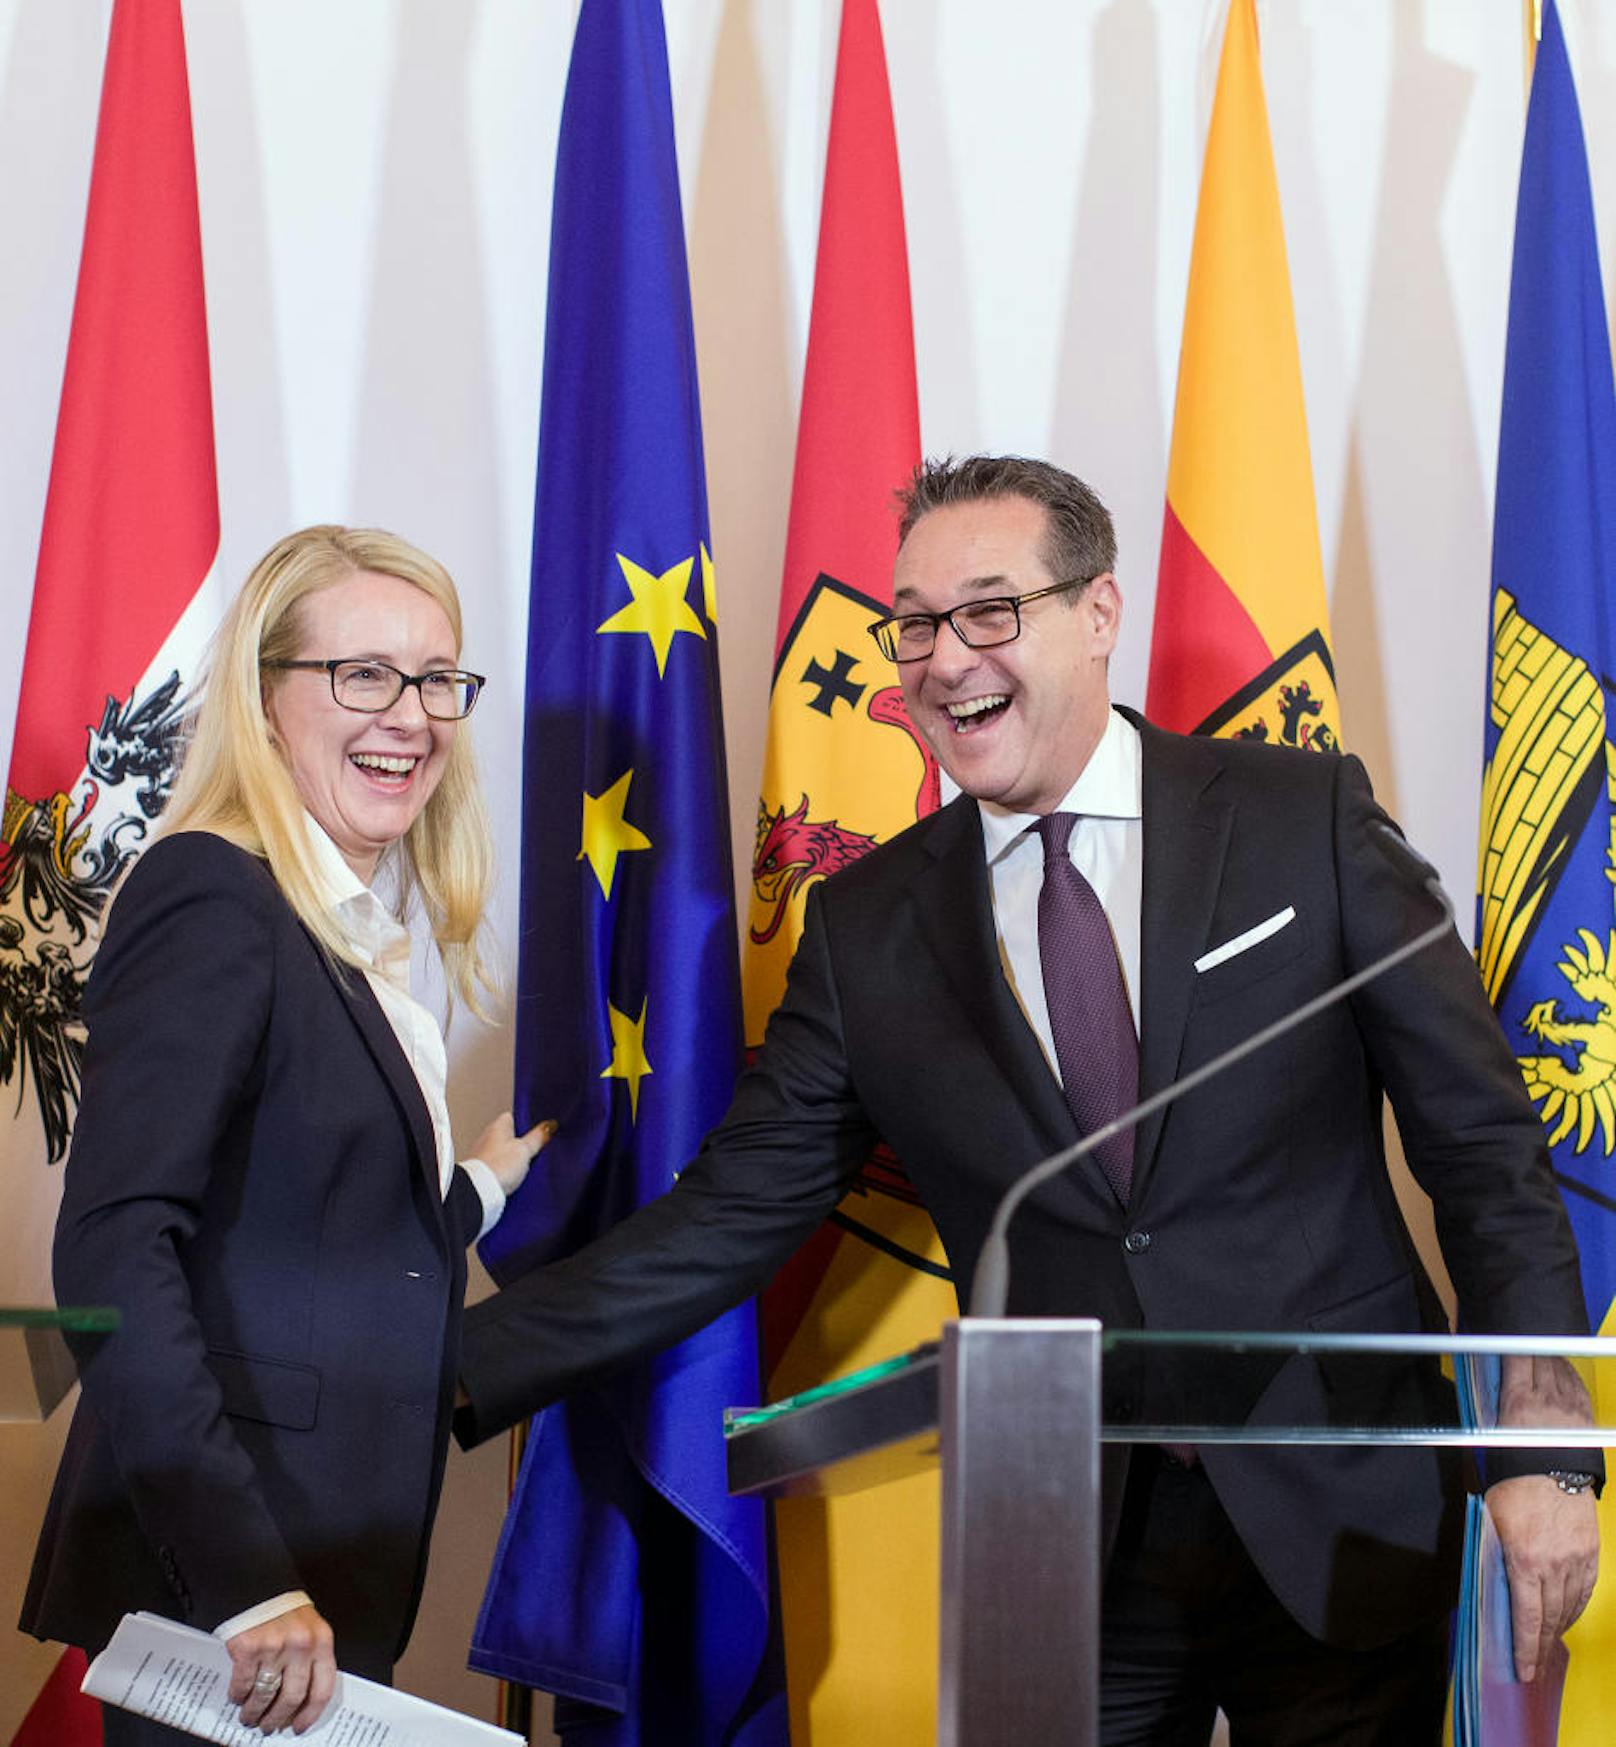 ÖVP-Wirtschaftsministerin Margarete Schramböck und Heinz-Christian Strache (FPÖ) richteten die umgefallene EU-Fahne gemeinsam wieder auf. "Ich habe die EU gerettet", kommentierte Strache den Vorfall.